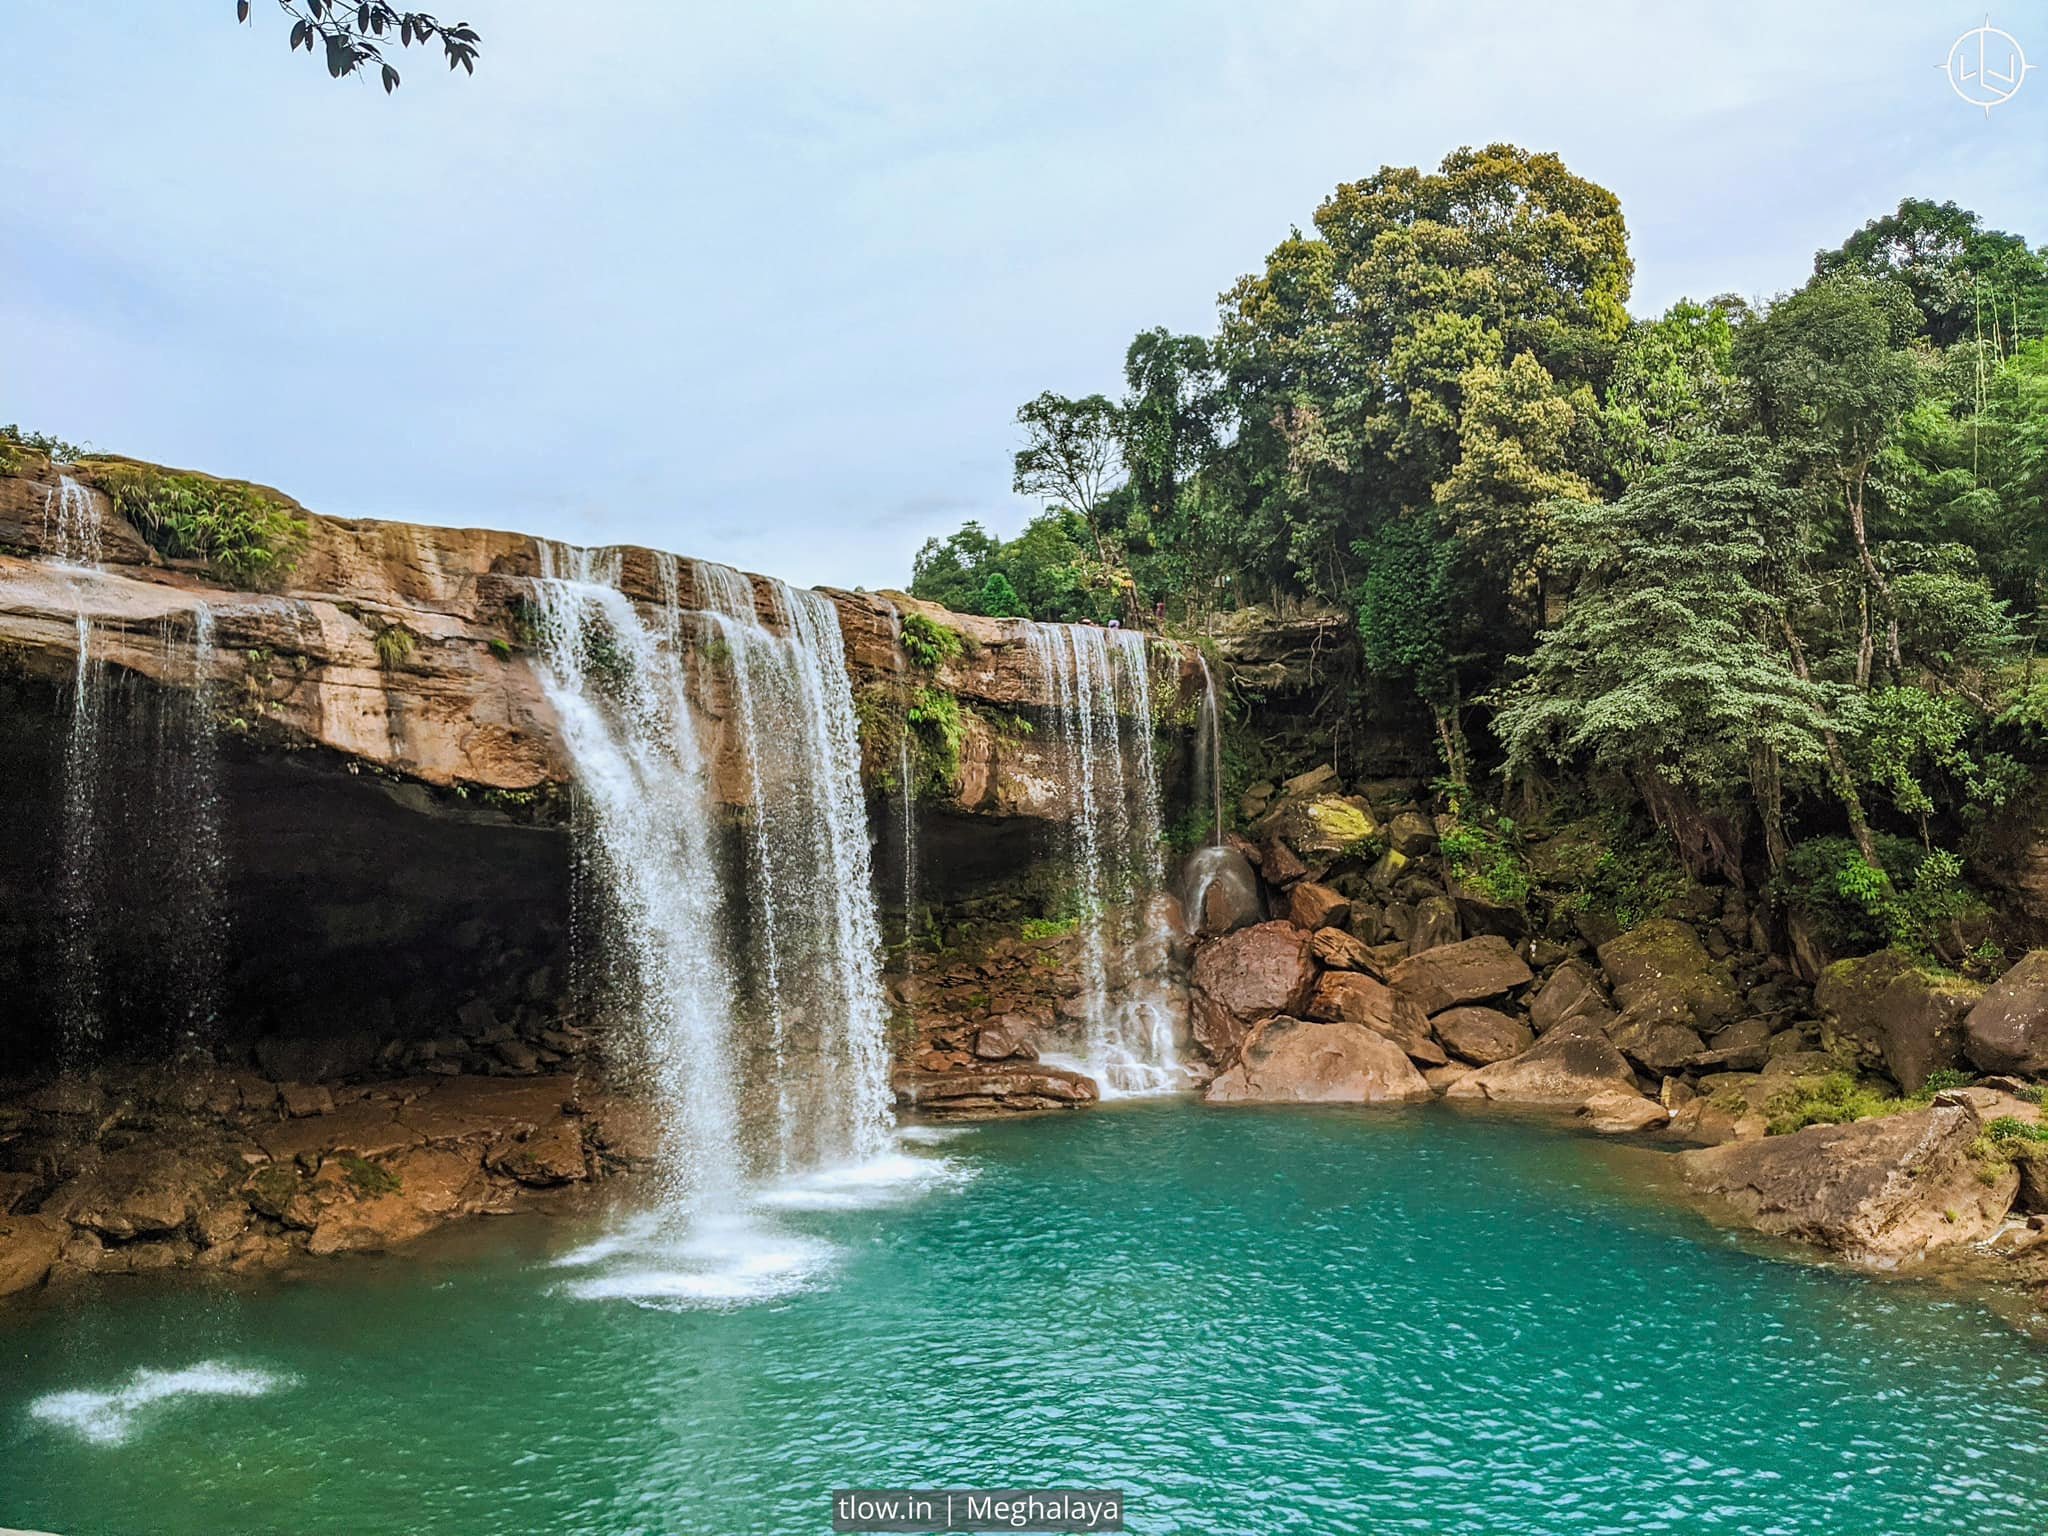 Krang Suri waterfall in Meghalaya